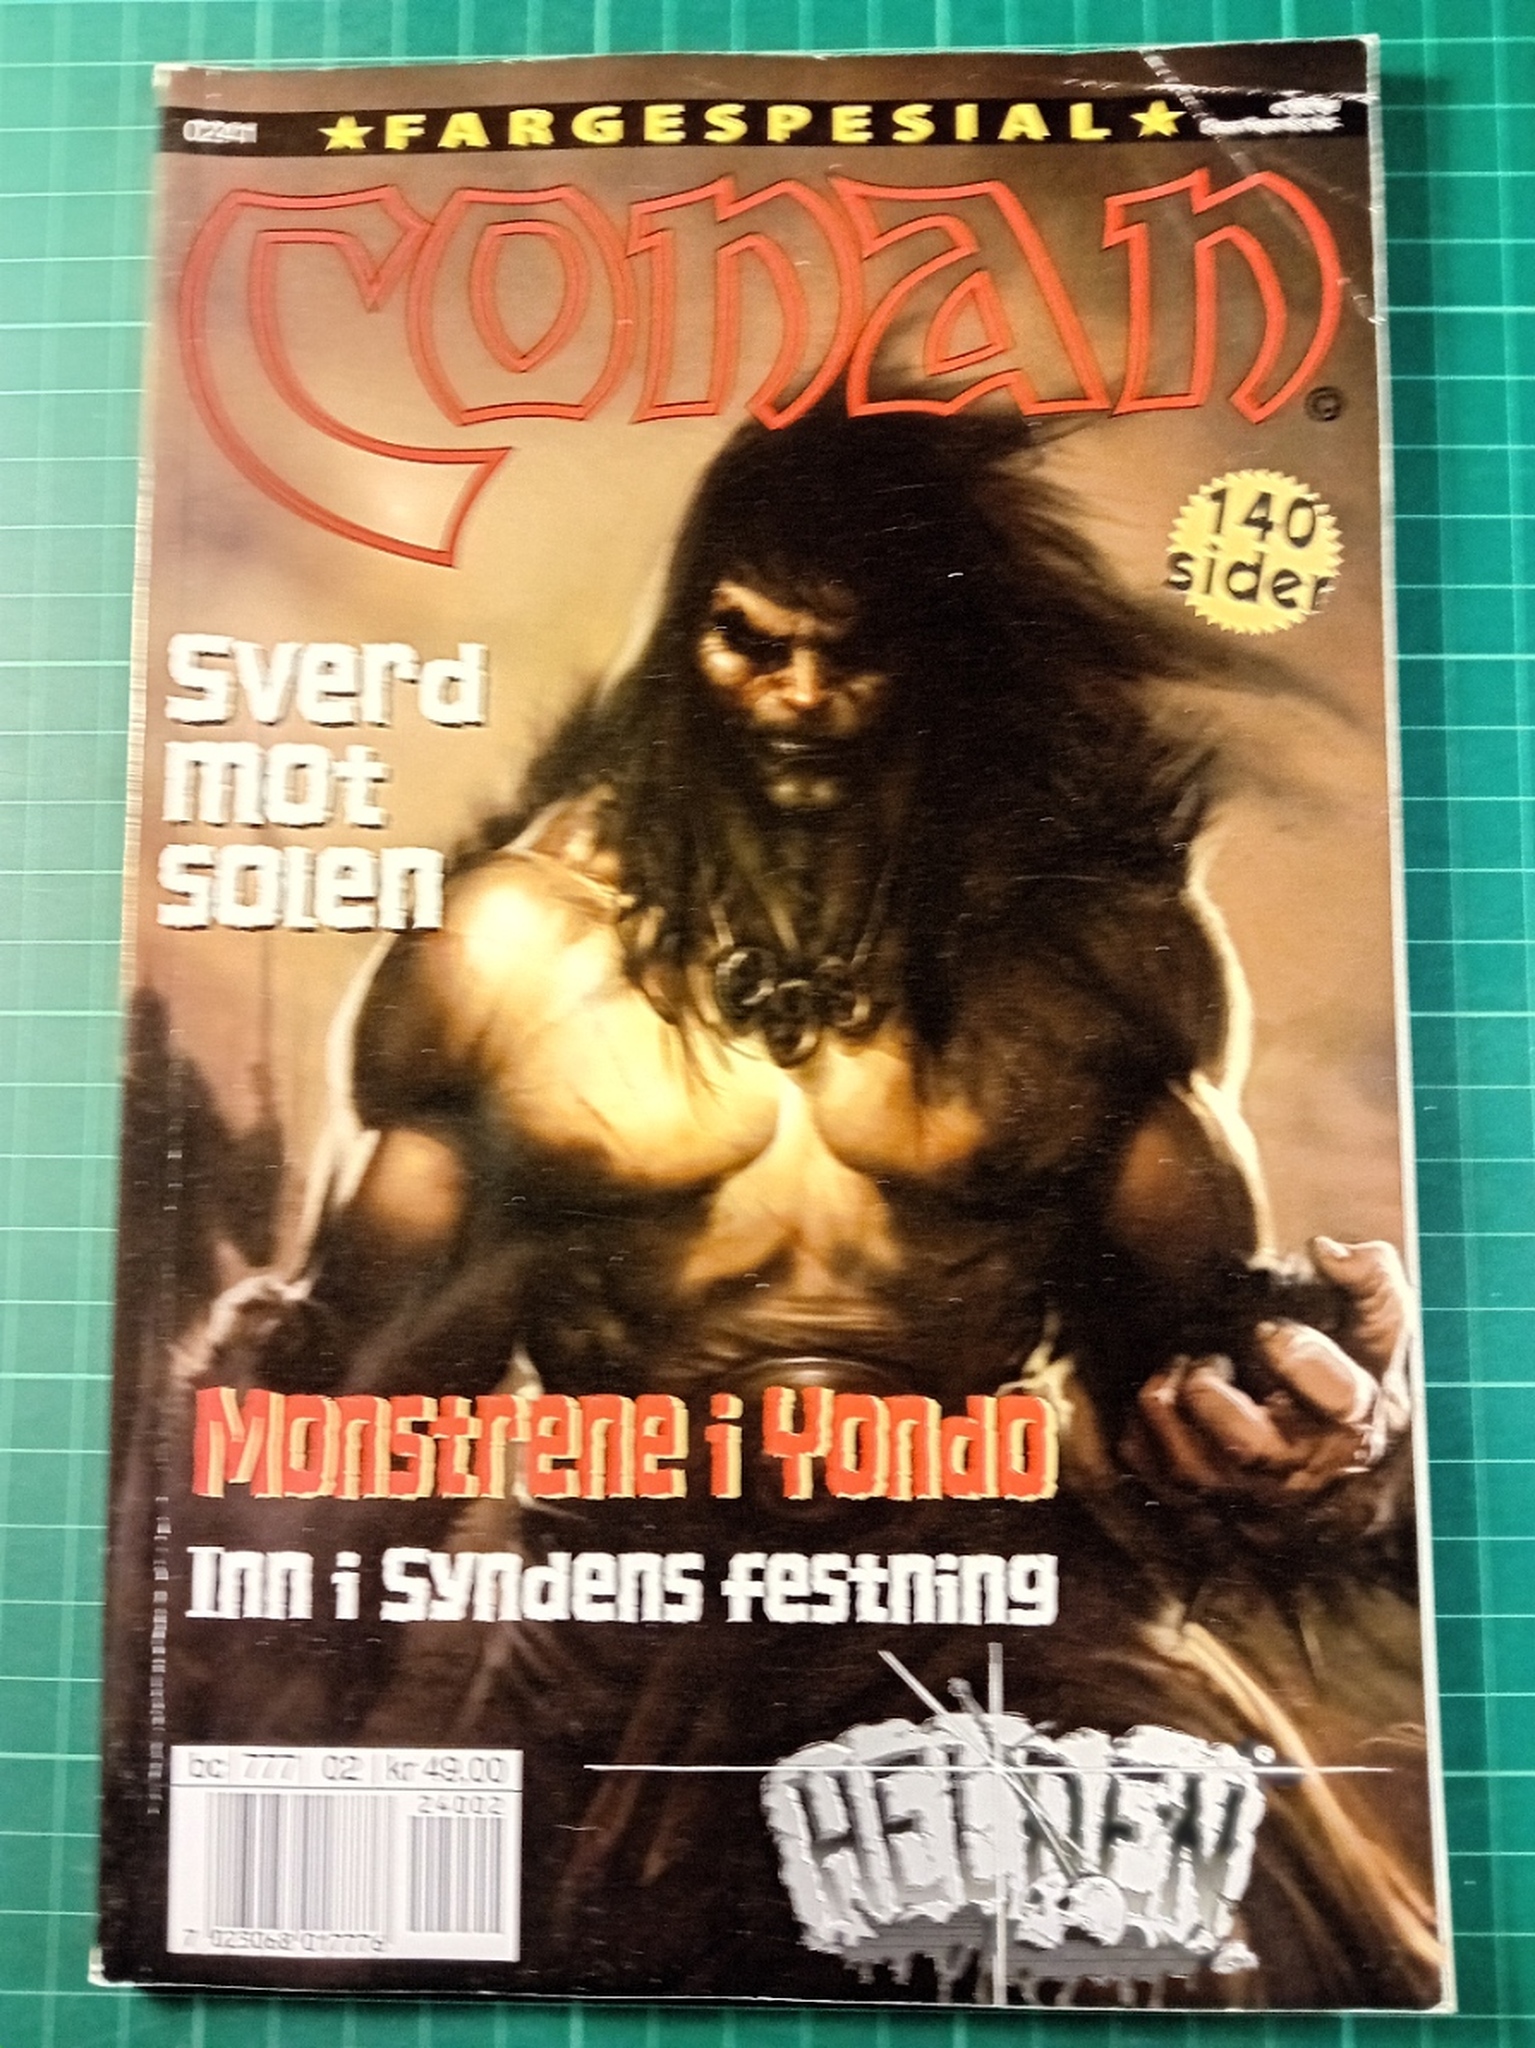 Conan fargespesial 2002 - 02